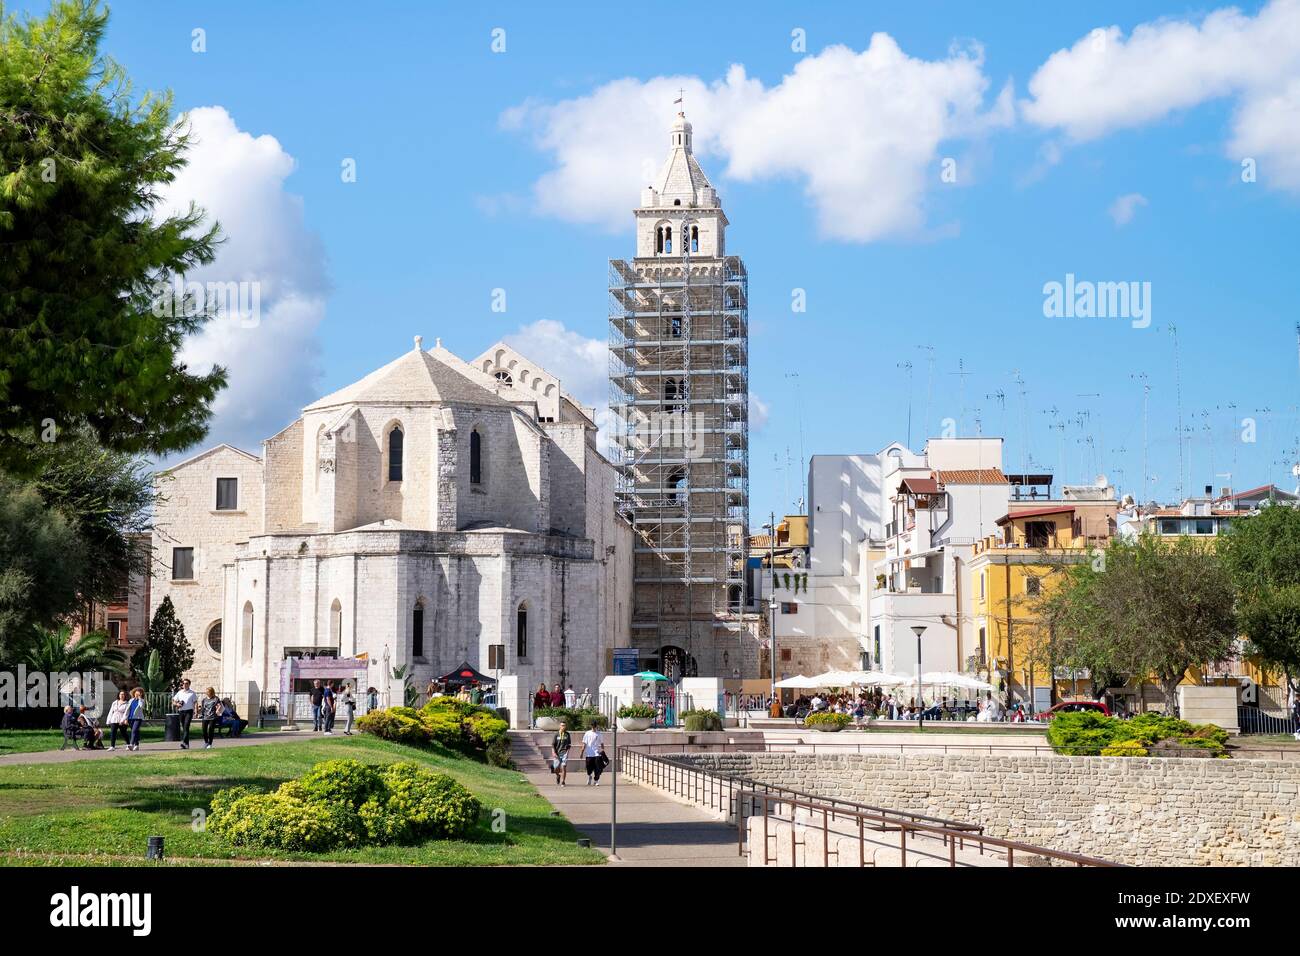 Italie, Apulia, Barletta, Cathédrale de Santa Maria Maggiore avec clocher en cours de rénovation Banque D'Images